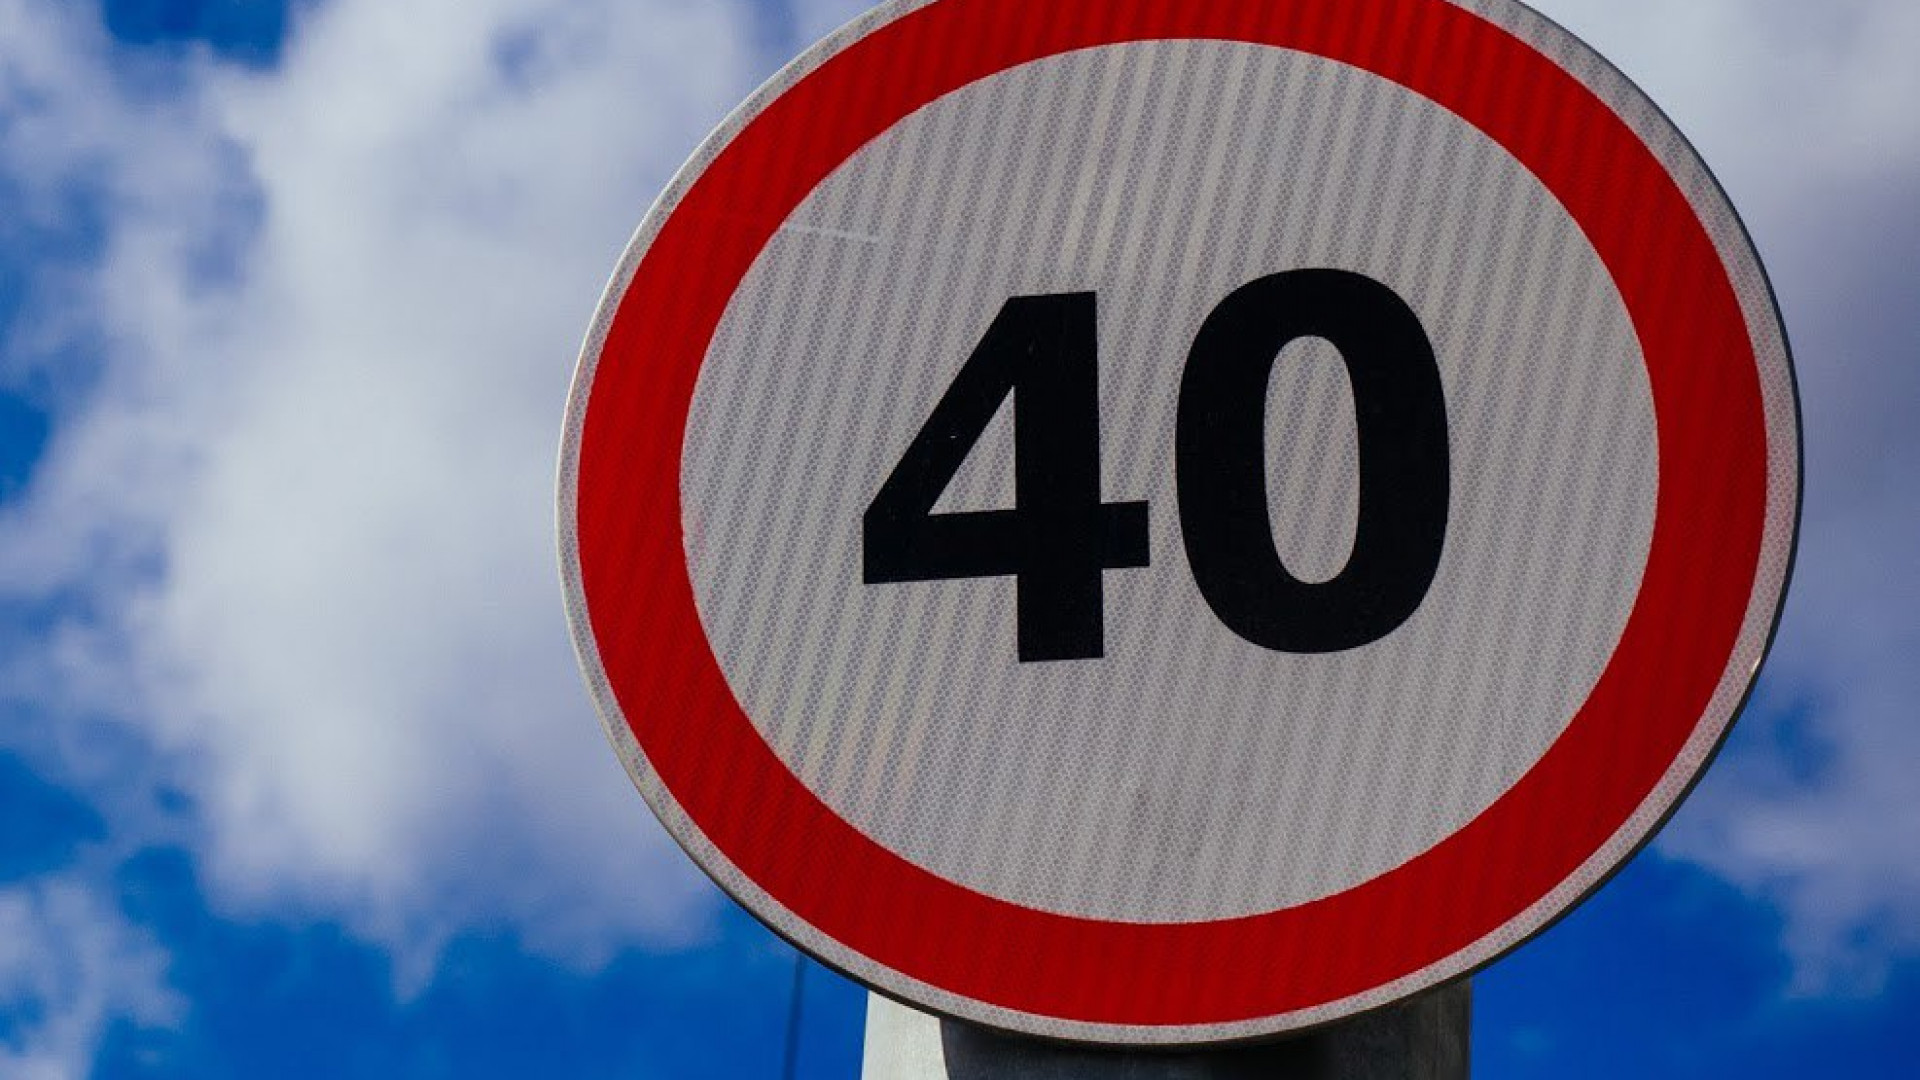 Ограничение. Ограничение скорости 40. Ограничение 40 км/ч знак. Знак ограничение скорости 40 км. Дорожный знак 3.24 ограничение максимальной скорости.